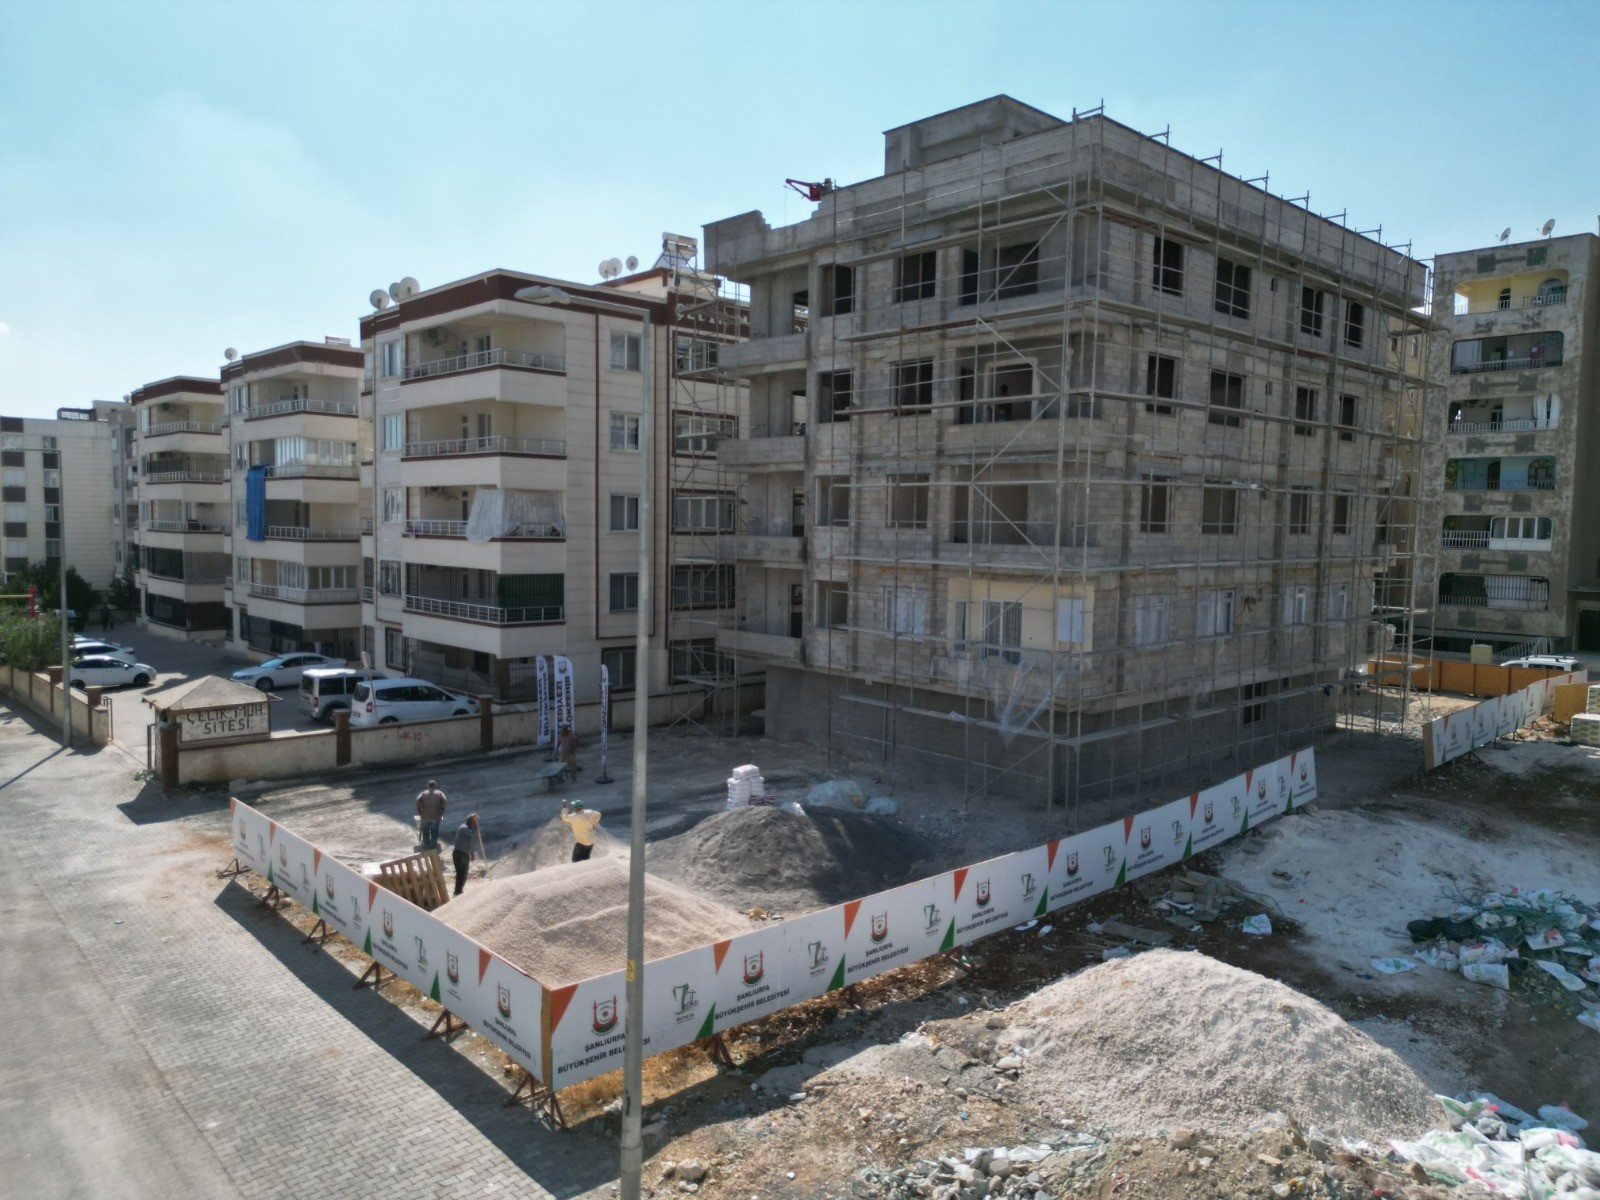 Şanlıurfa Büyükşehir Belediyesi'nden imkanı olmayan ailelere konut: 18 konut yerleşime hazırlanıyor